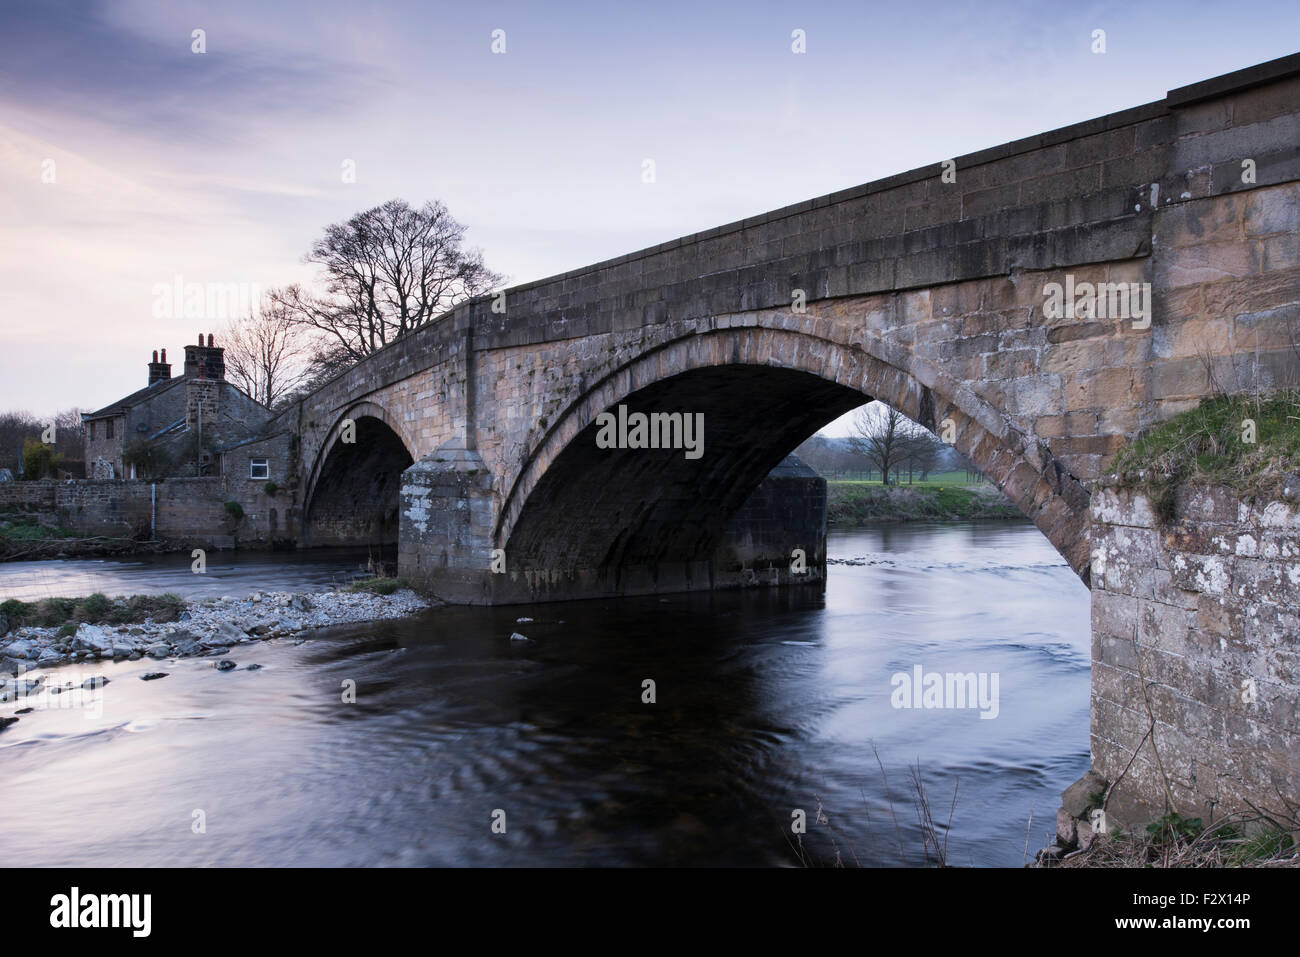 Malerische Aussicht bei Sonnenuntergang, traditionellen, alten, Stein, Straße Brücke über fliessendes Wasser des Flusses Wharfe in der Nähe von Bolton Abbey, Yorkshire Dales, England, UK. Stockfoto